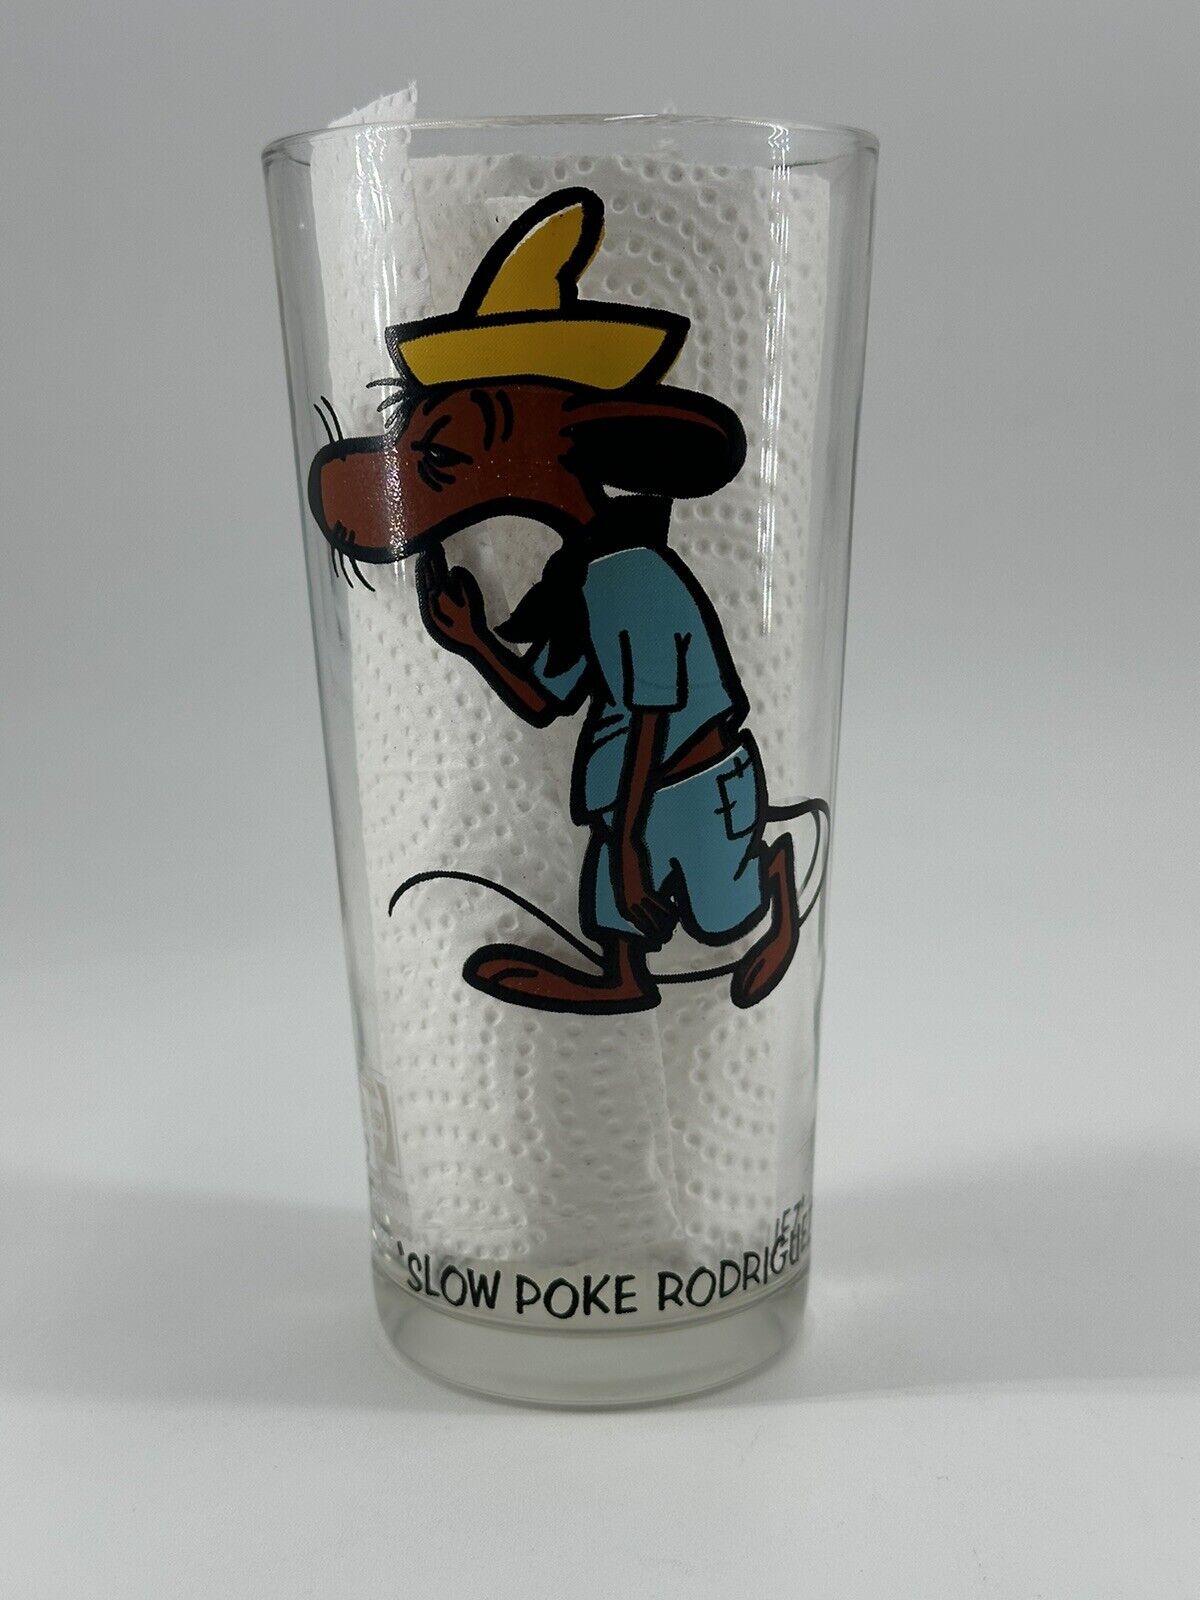 Rare Vintage 1973 Slow Poke Rodriguez Brockway Glass Looney Tunes Warner Bros